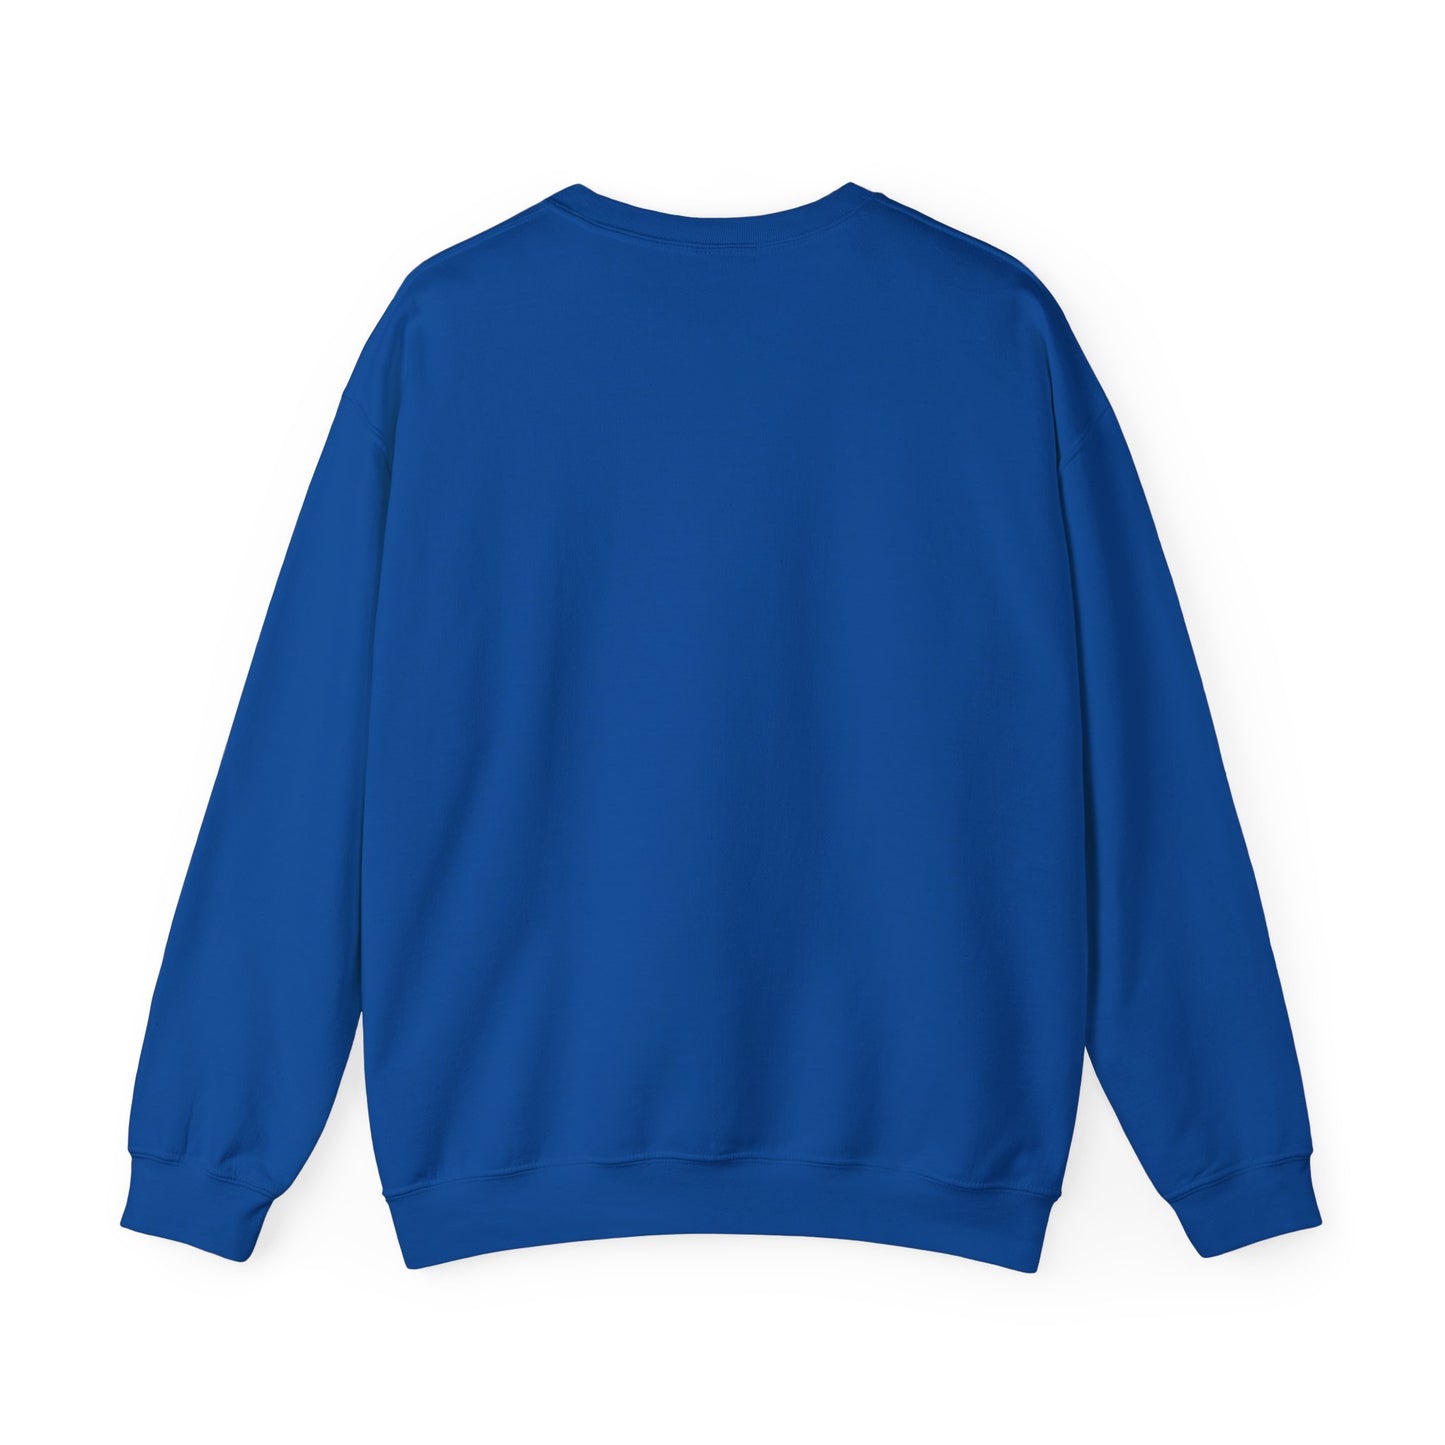 Feel-Joy Unisex Heavy Blend™ Crewneck Sweatshirt